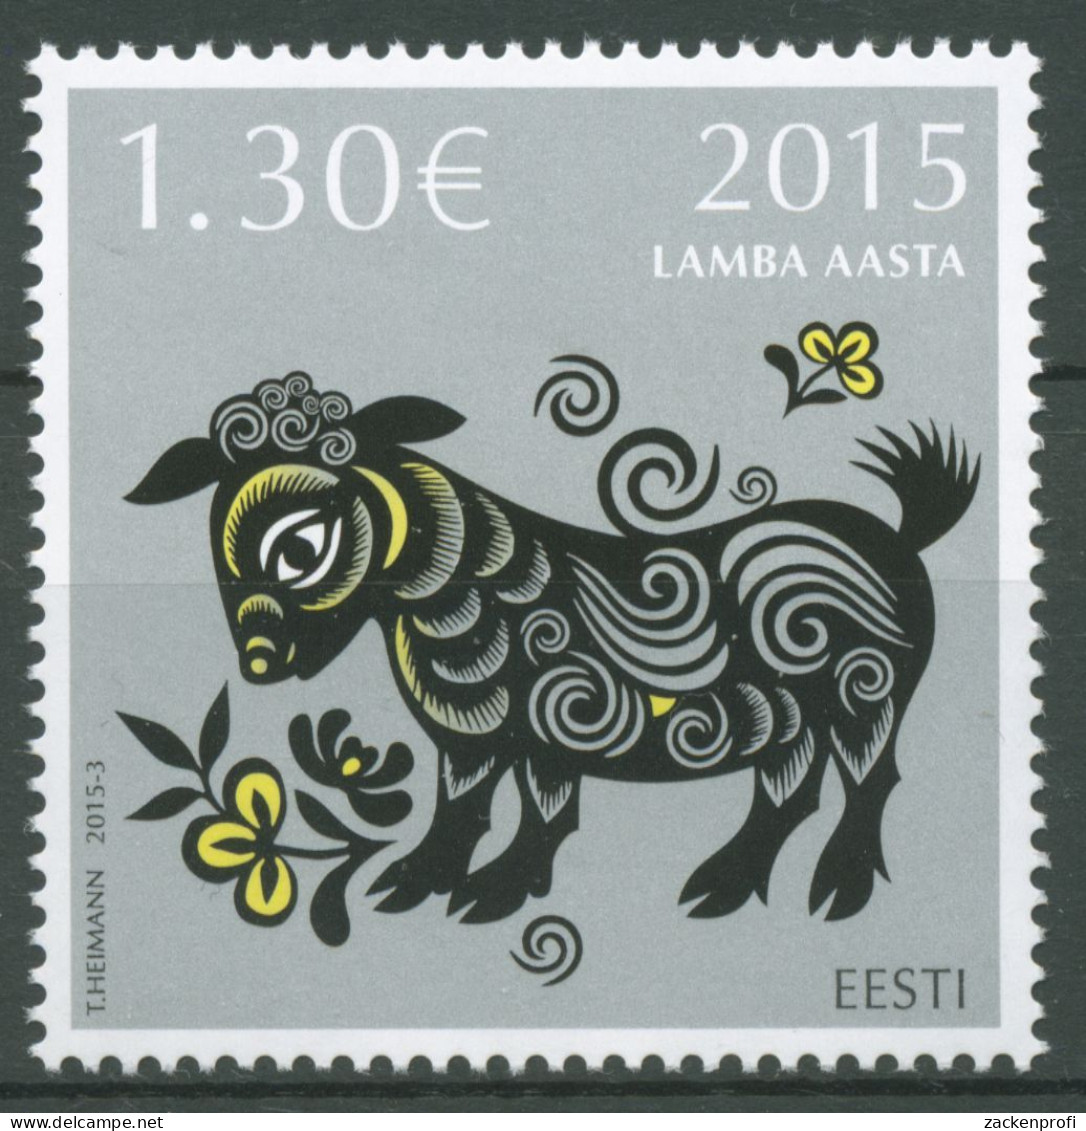 Estland 2015 Chinesisches Neujahr Jahr Des Schafes 816 Postfrisch - Estland